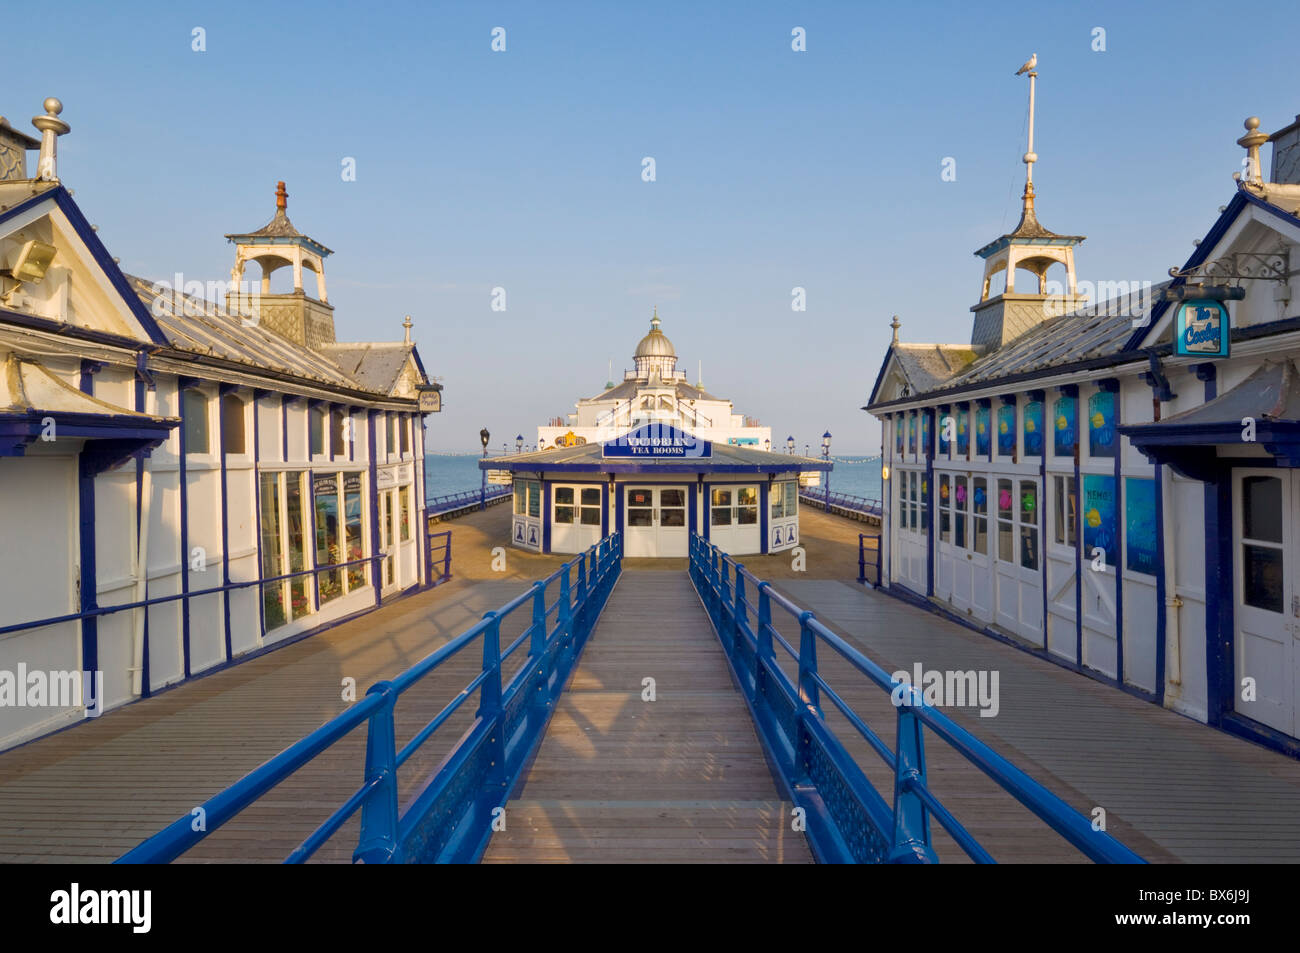 Eastbourne Pier, plage et épis, Eastbourne, East Sussex, Angleterre, Royaume-Uni, Europe Banque D'Images